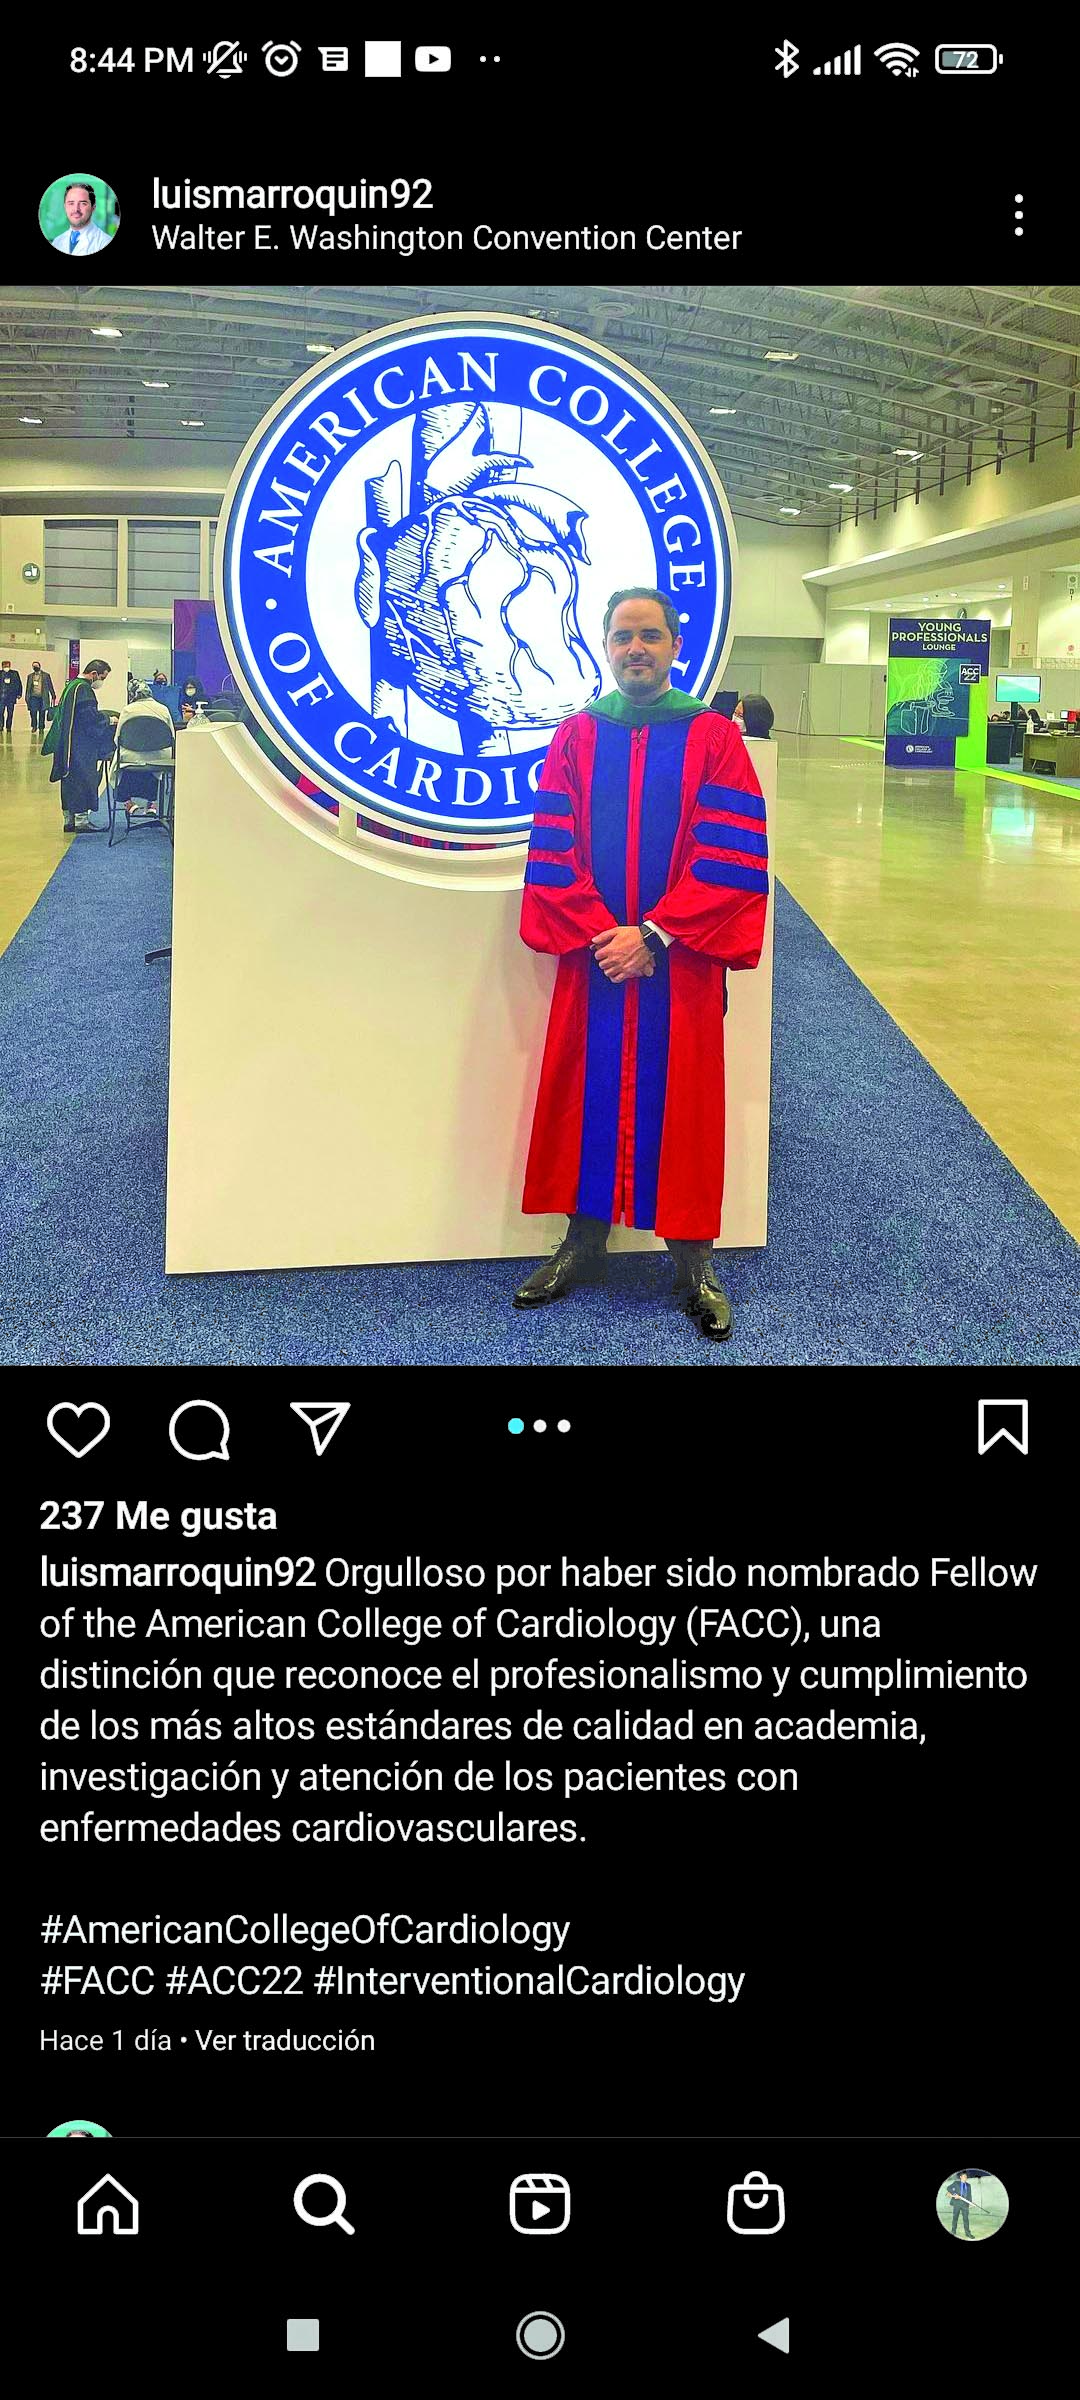 El doctor Luis A. Marroquín Donday, fue nombrado Miembro del Colegio Americano de Cardiología (FACC por sus siglas en inglés), que es una distinción que reconoce el profesionalismo y cumplimiento de los más altos estándares de calidad en academia, investigación y atención de los pacientes con enfermedades cardiovasculares.